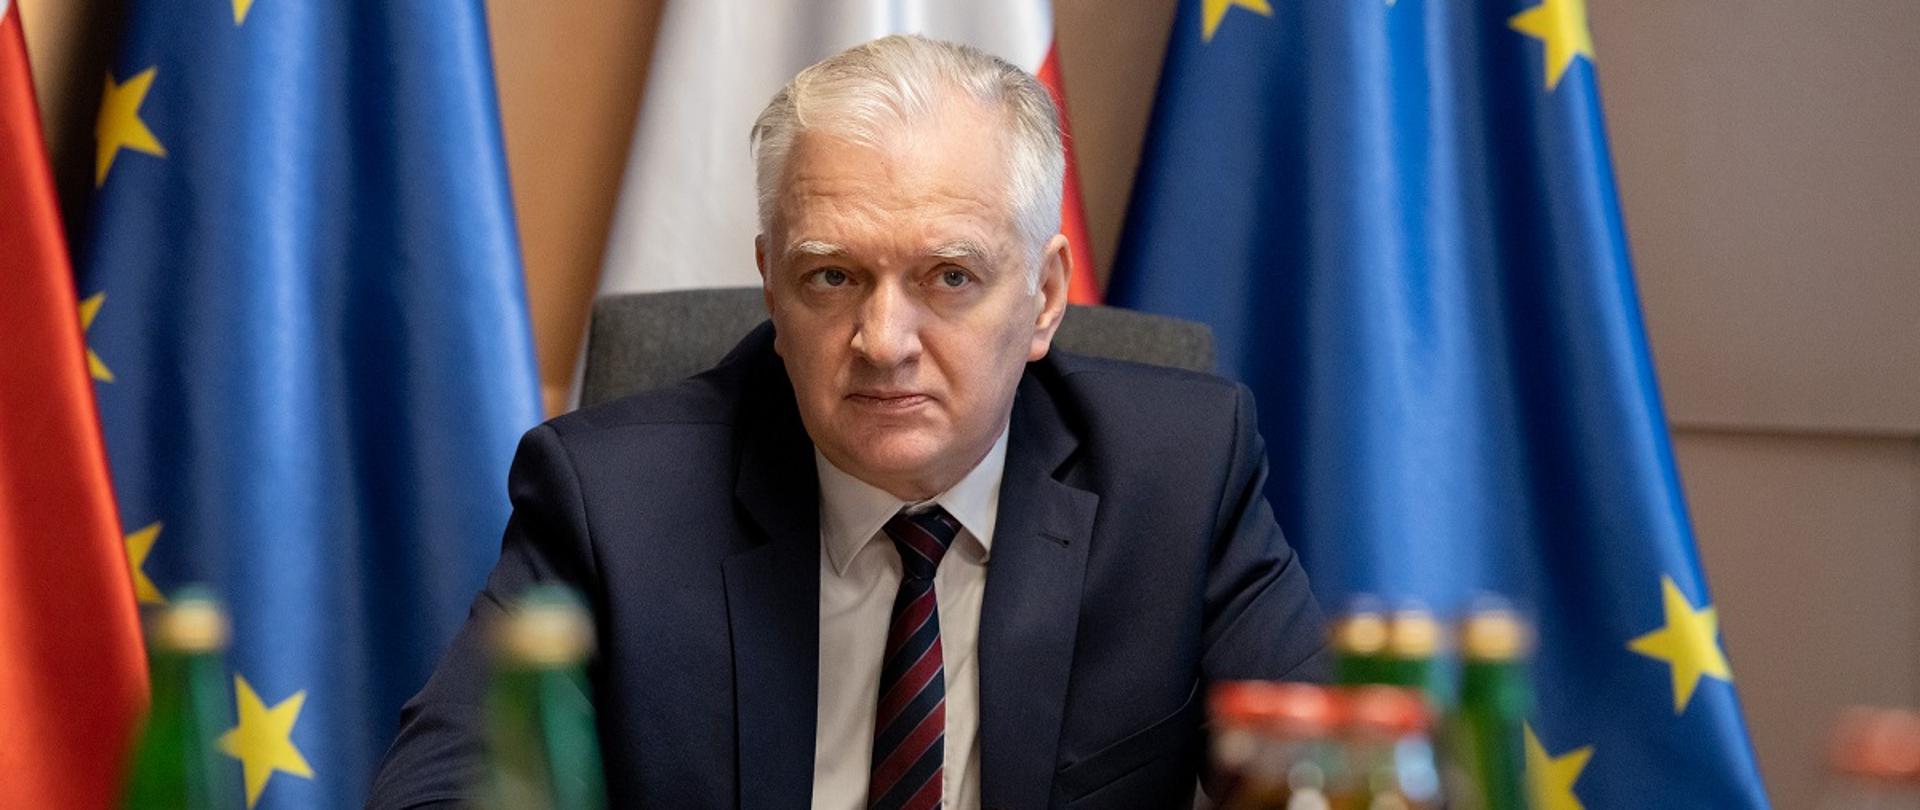 Wicepremier i minister rozwoju, pracy i technologii Jarosław Gowin uczestniczący w posiedzeniu Rady ds. Konkurencyjności